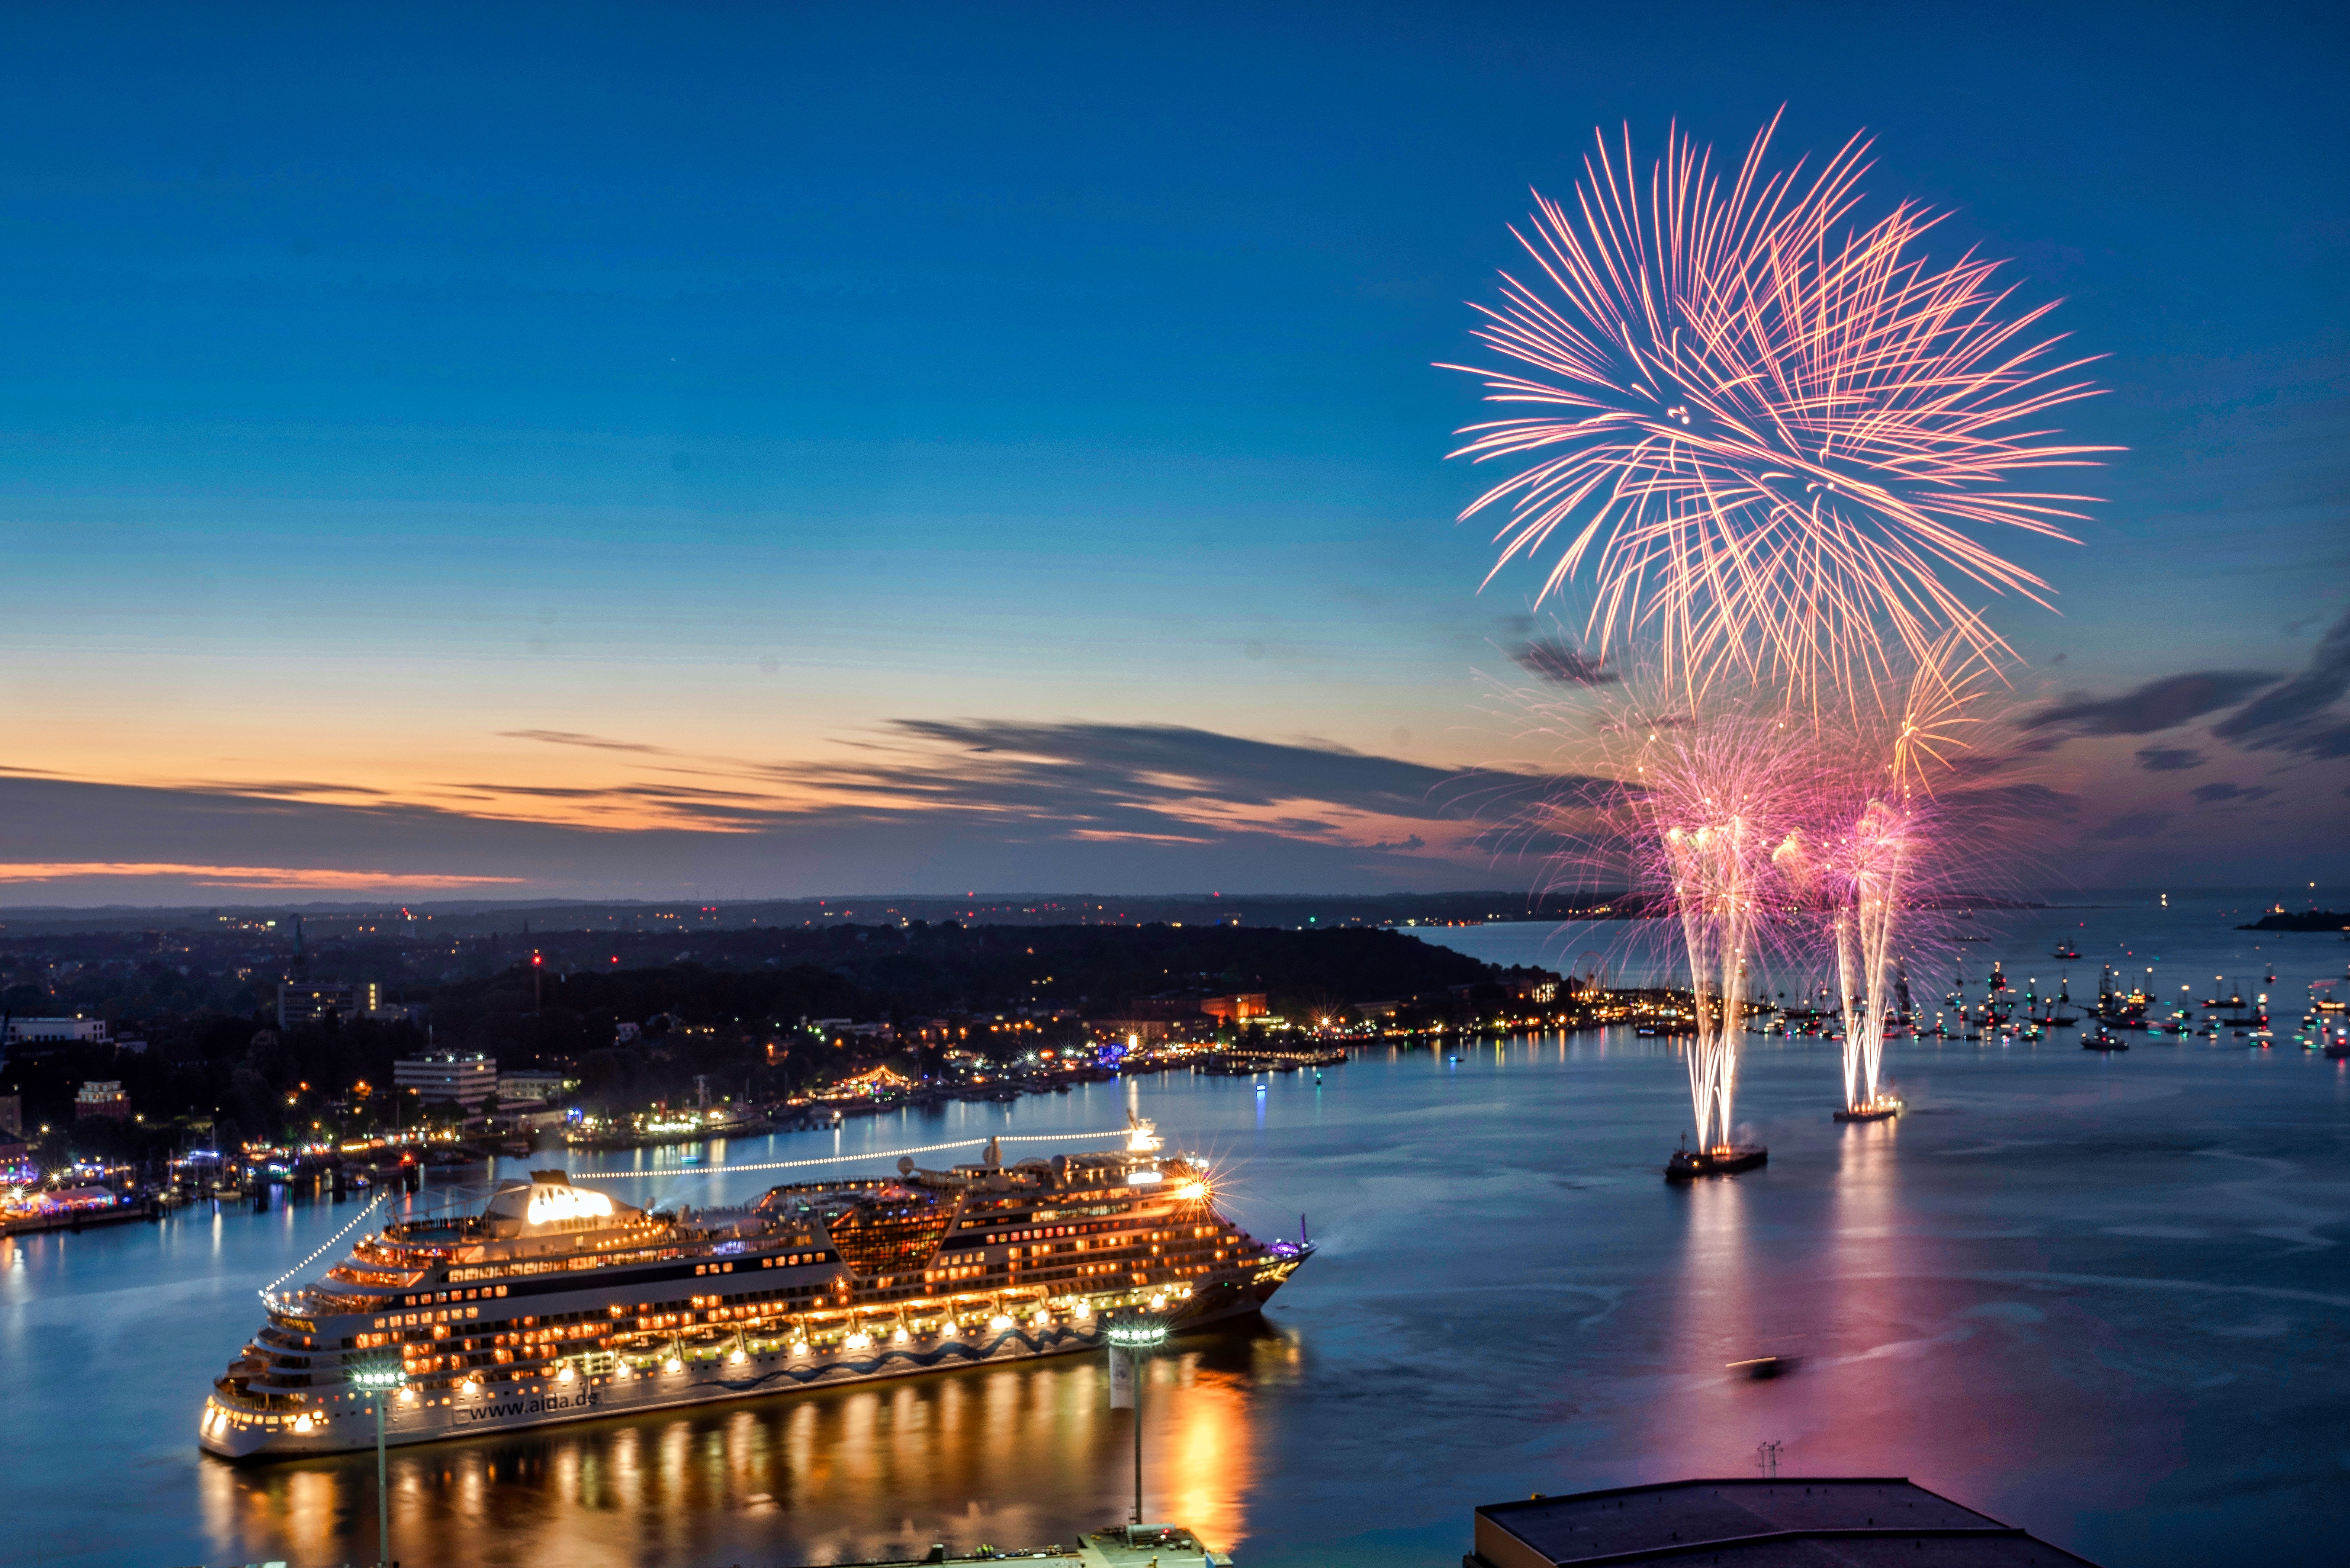  AIDA Cruises engagiert sich im Rahmen der 125. Kieler Woche vom 22. bis zum 30. Juni 2019 erneut als Event-Sponsor und bringt vier AIDA Kreuzfahrtschiffe zum größten Segelevent der Welt